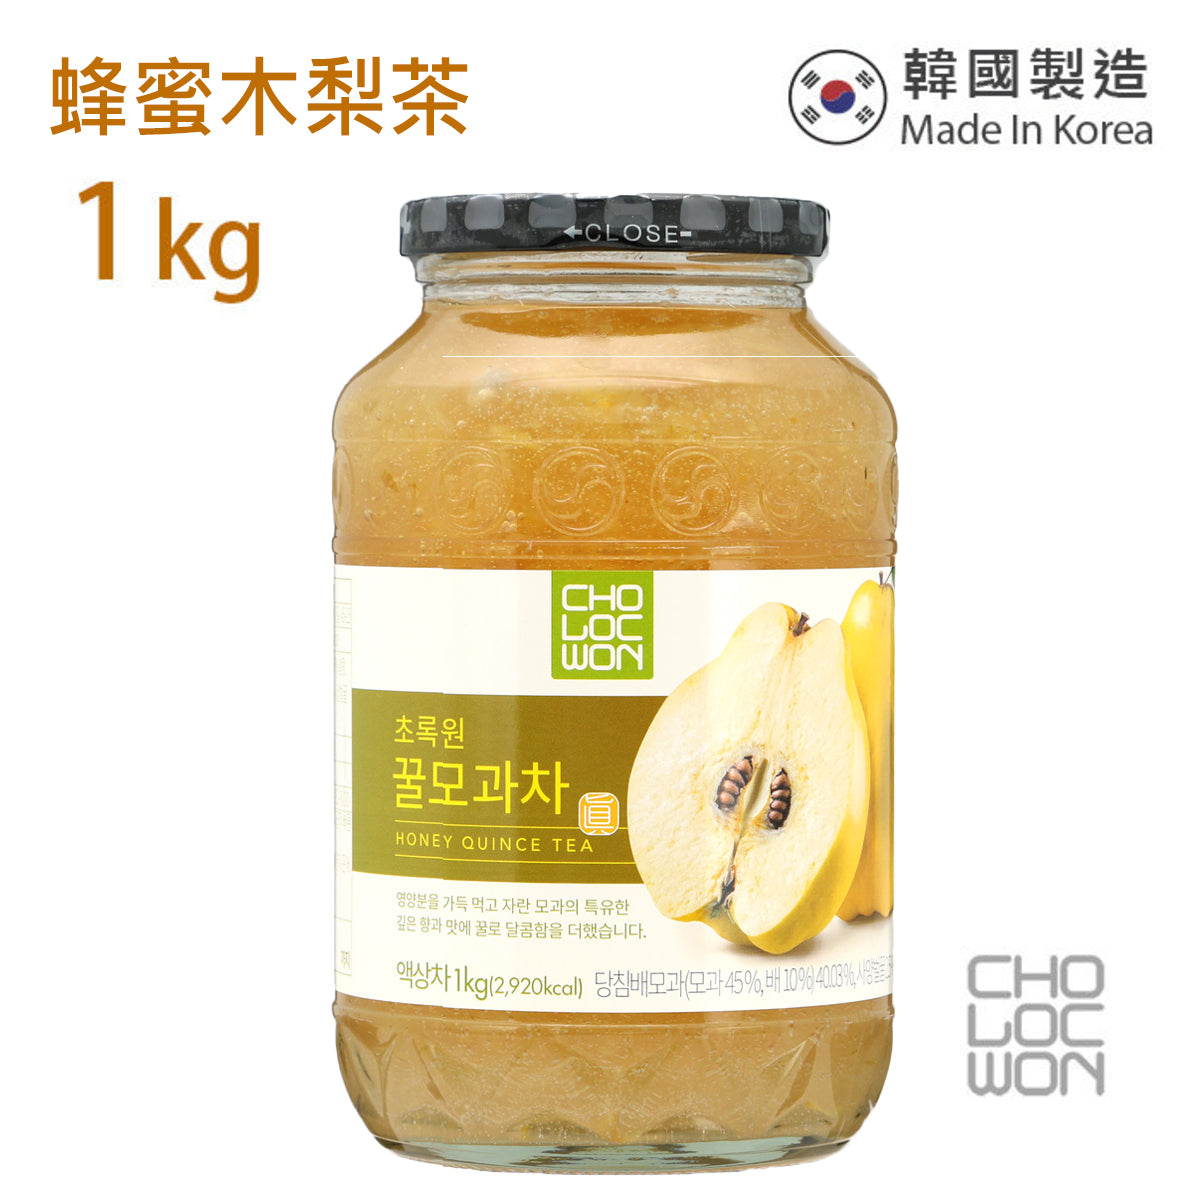 草綠園 - 韓國蜂蜜木梨茶 Korean Honey Quince Tea 1kg